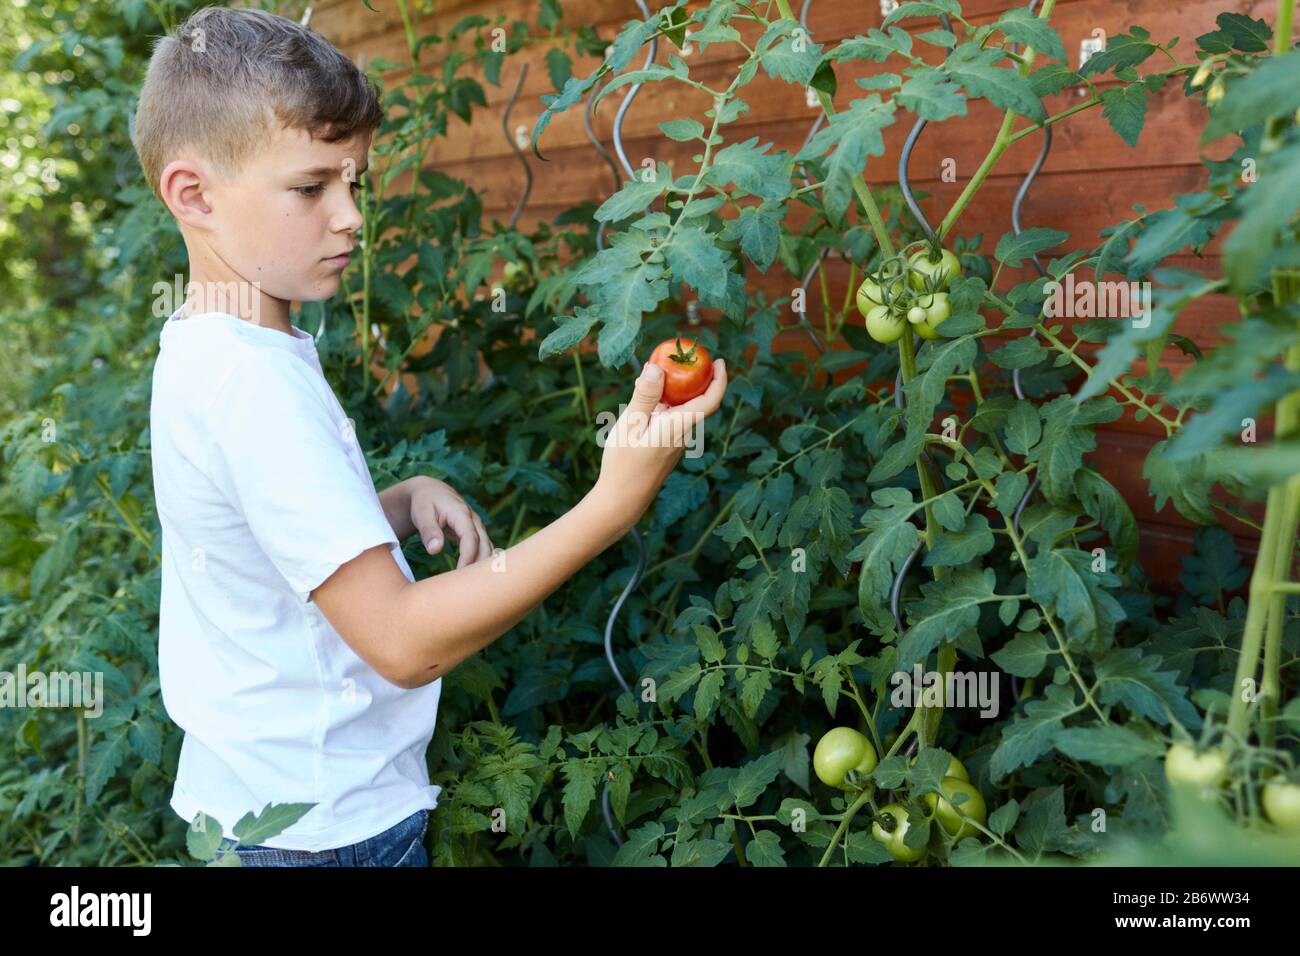 Enfants enquêtant sur la nourriture. Un garçon prend des tomates pour faire du ketchup. Apprentissage selon le principe de la pédagogie Reggio, compréhension et découverte ludiques. Allemagne. Banque D'Images